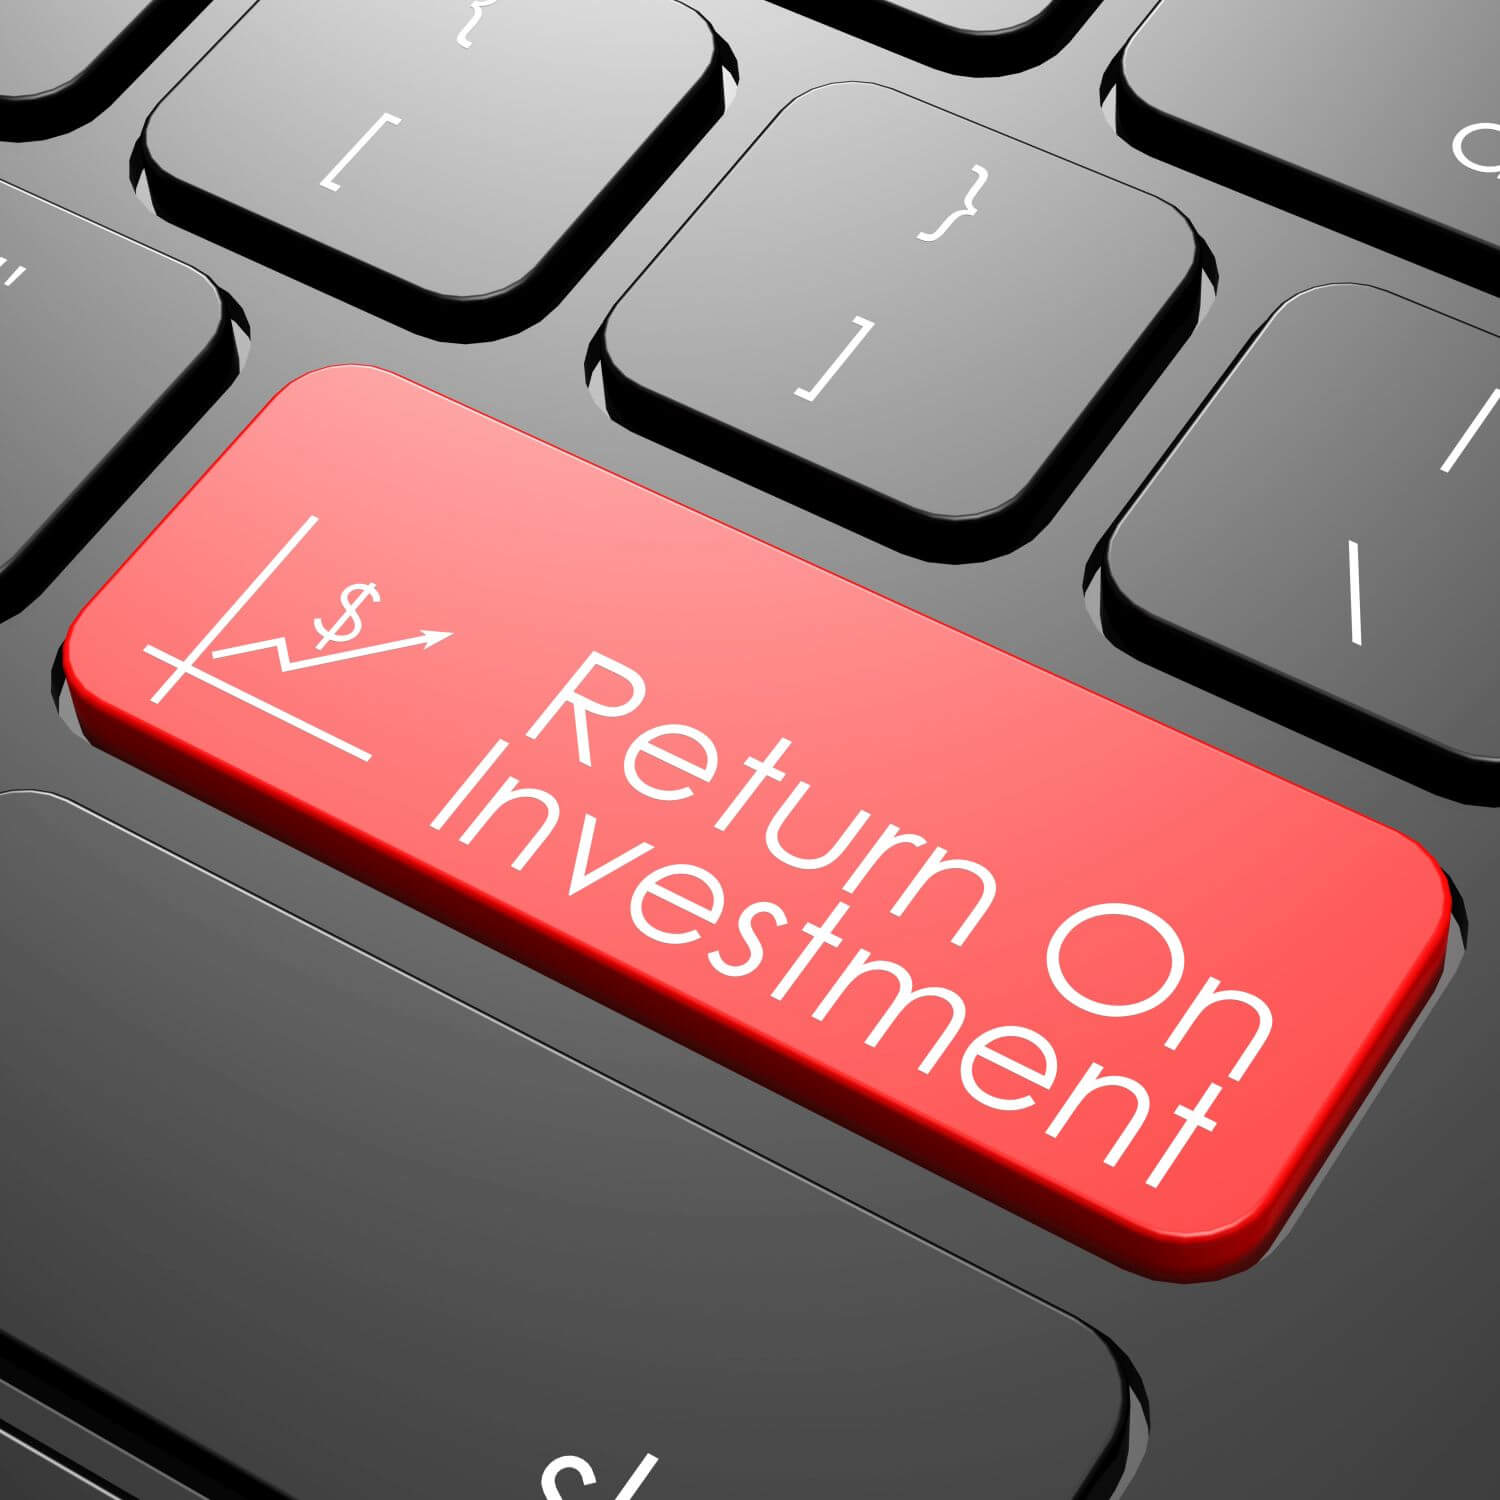 return on investment